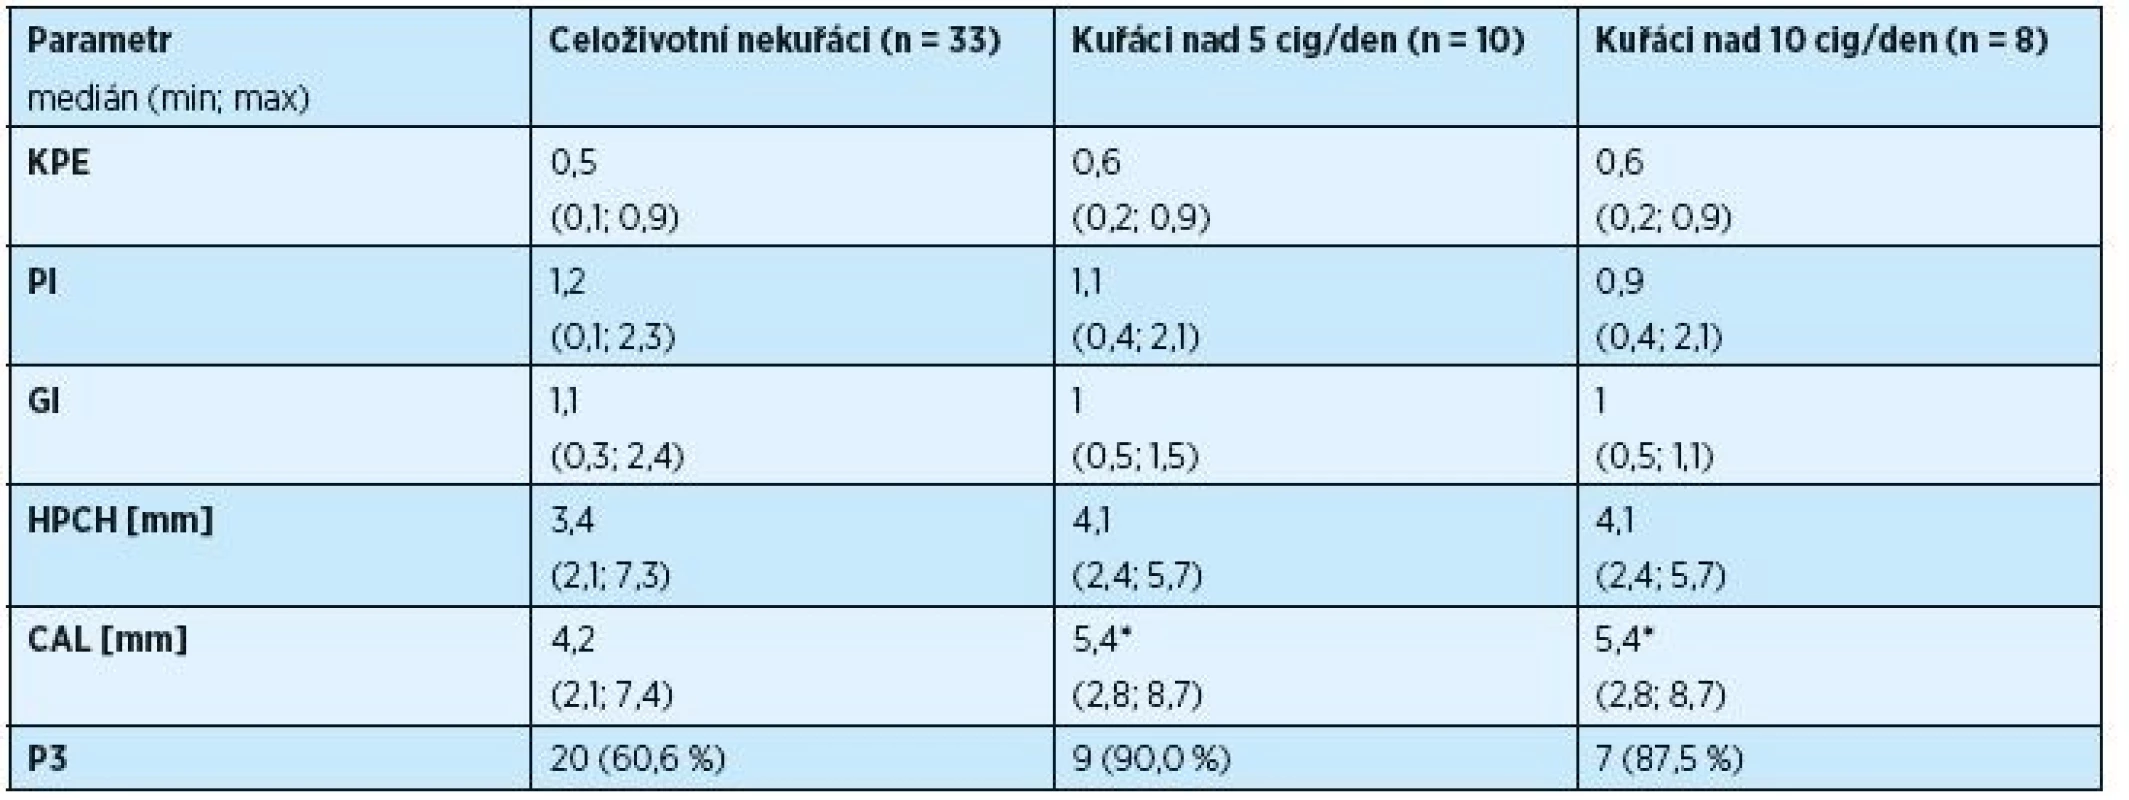 Vliv kouření na stav chrupu a parodontu u osob s T2DM (n = 51)